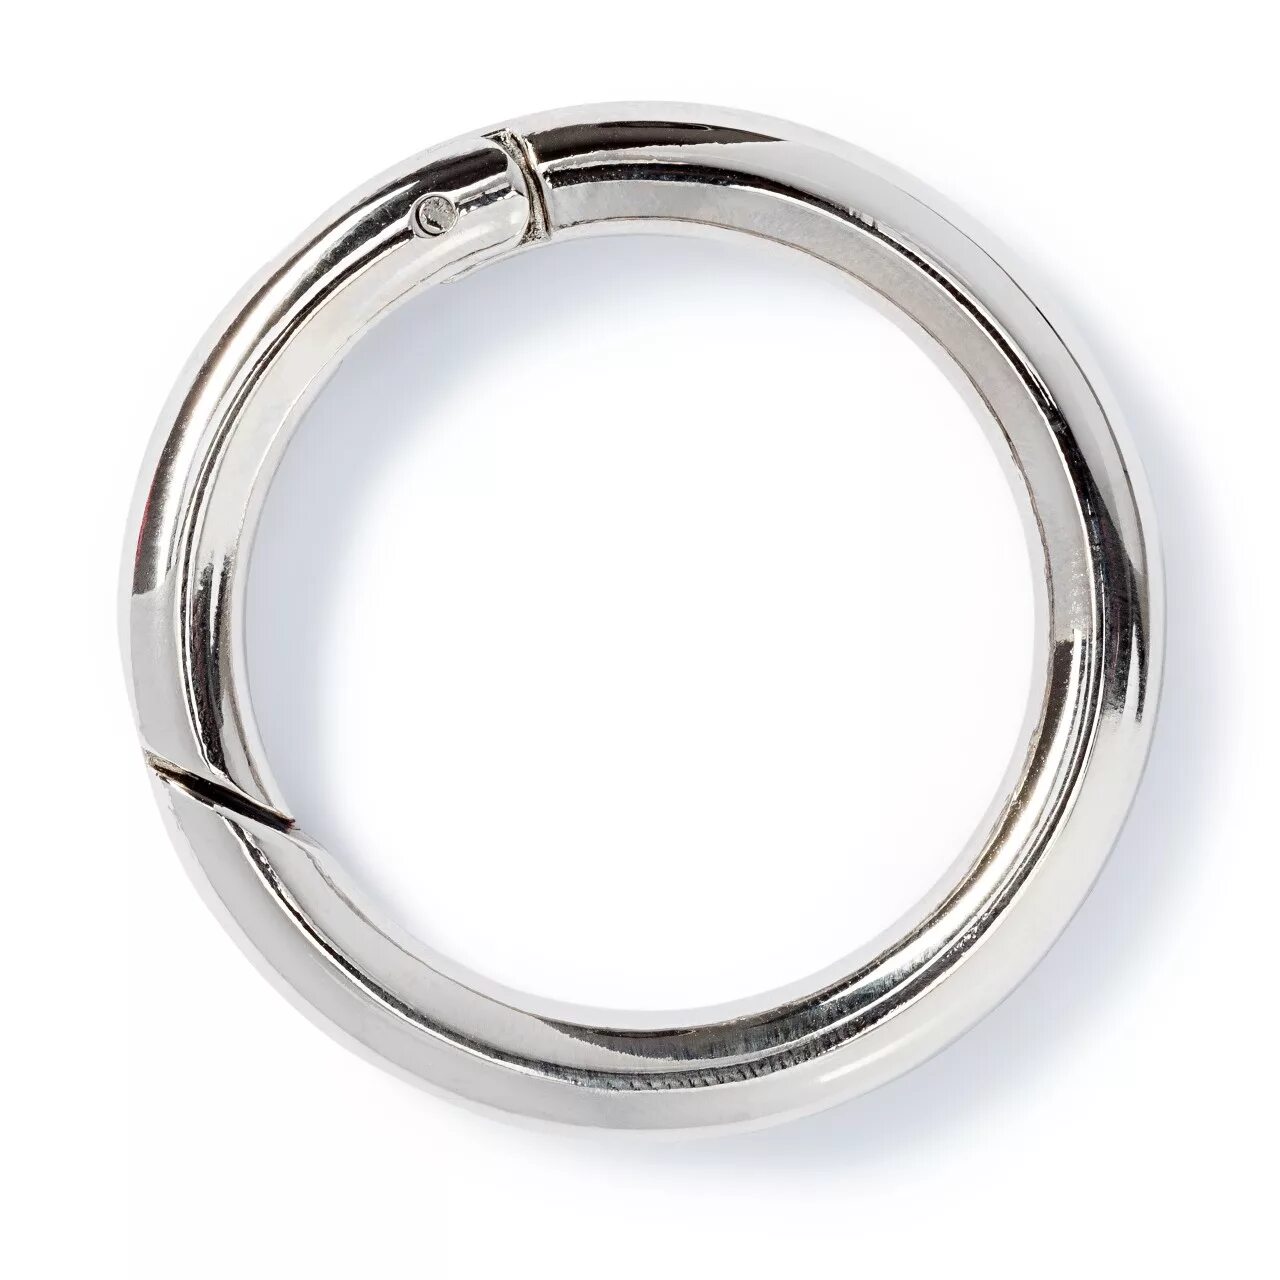 Большие кольца металлические. Prym 417891/417892/417890 кольца для сумок 35 мм. Кольцо фурнитура d100мм. Фурнитура сумочная металл кольцо 40 мм. Фурнитура сумочная металл "Prym".